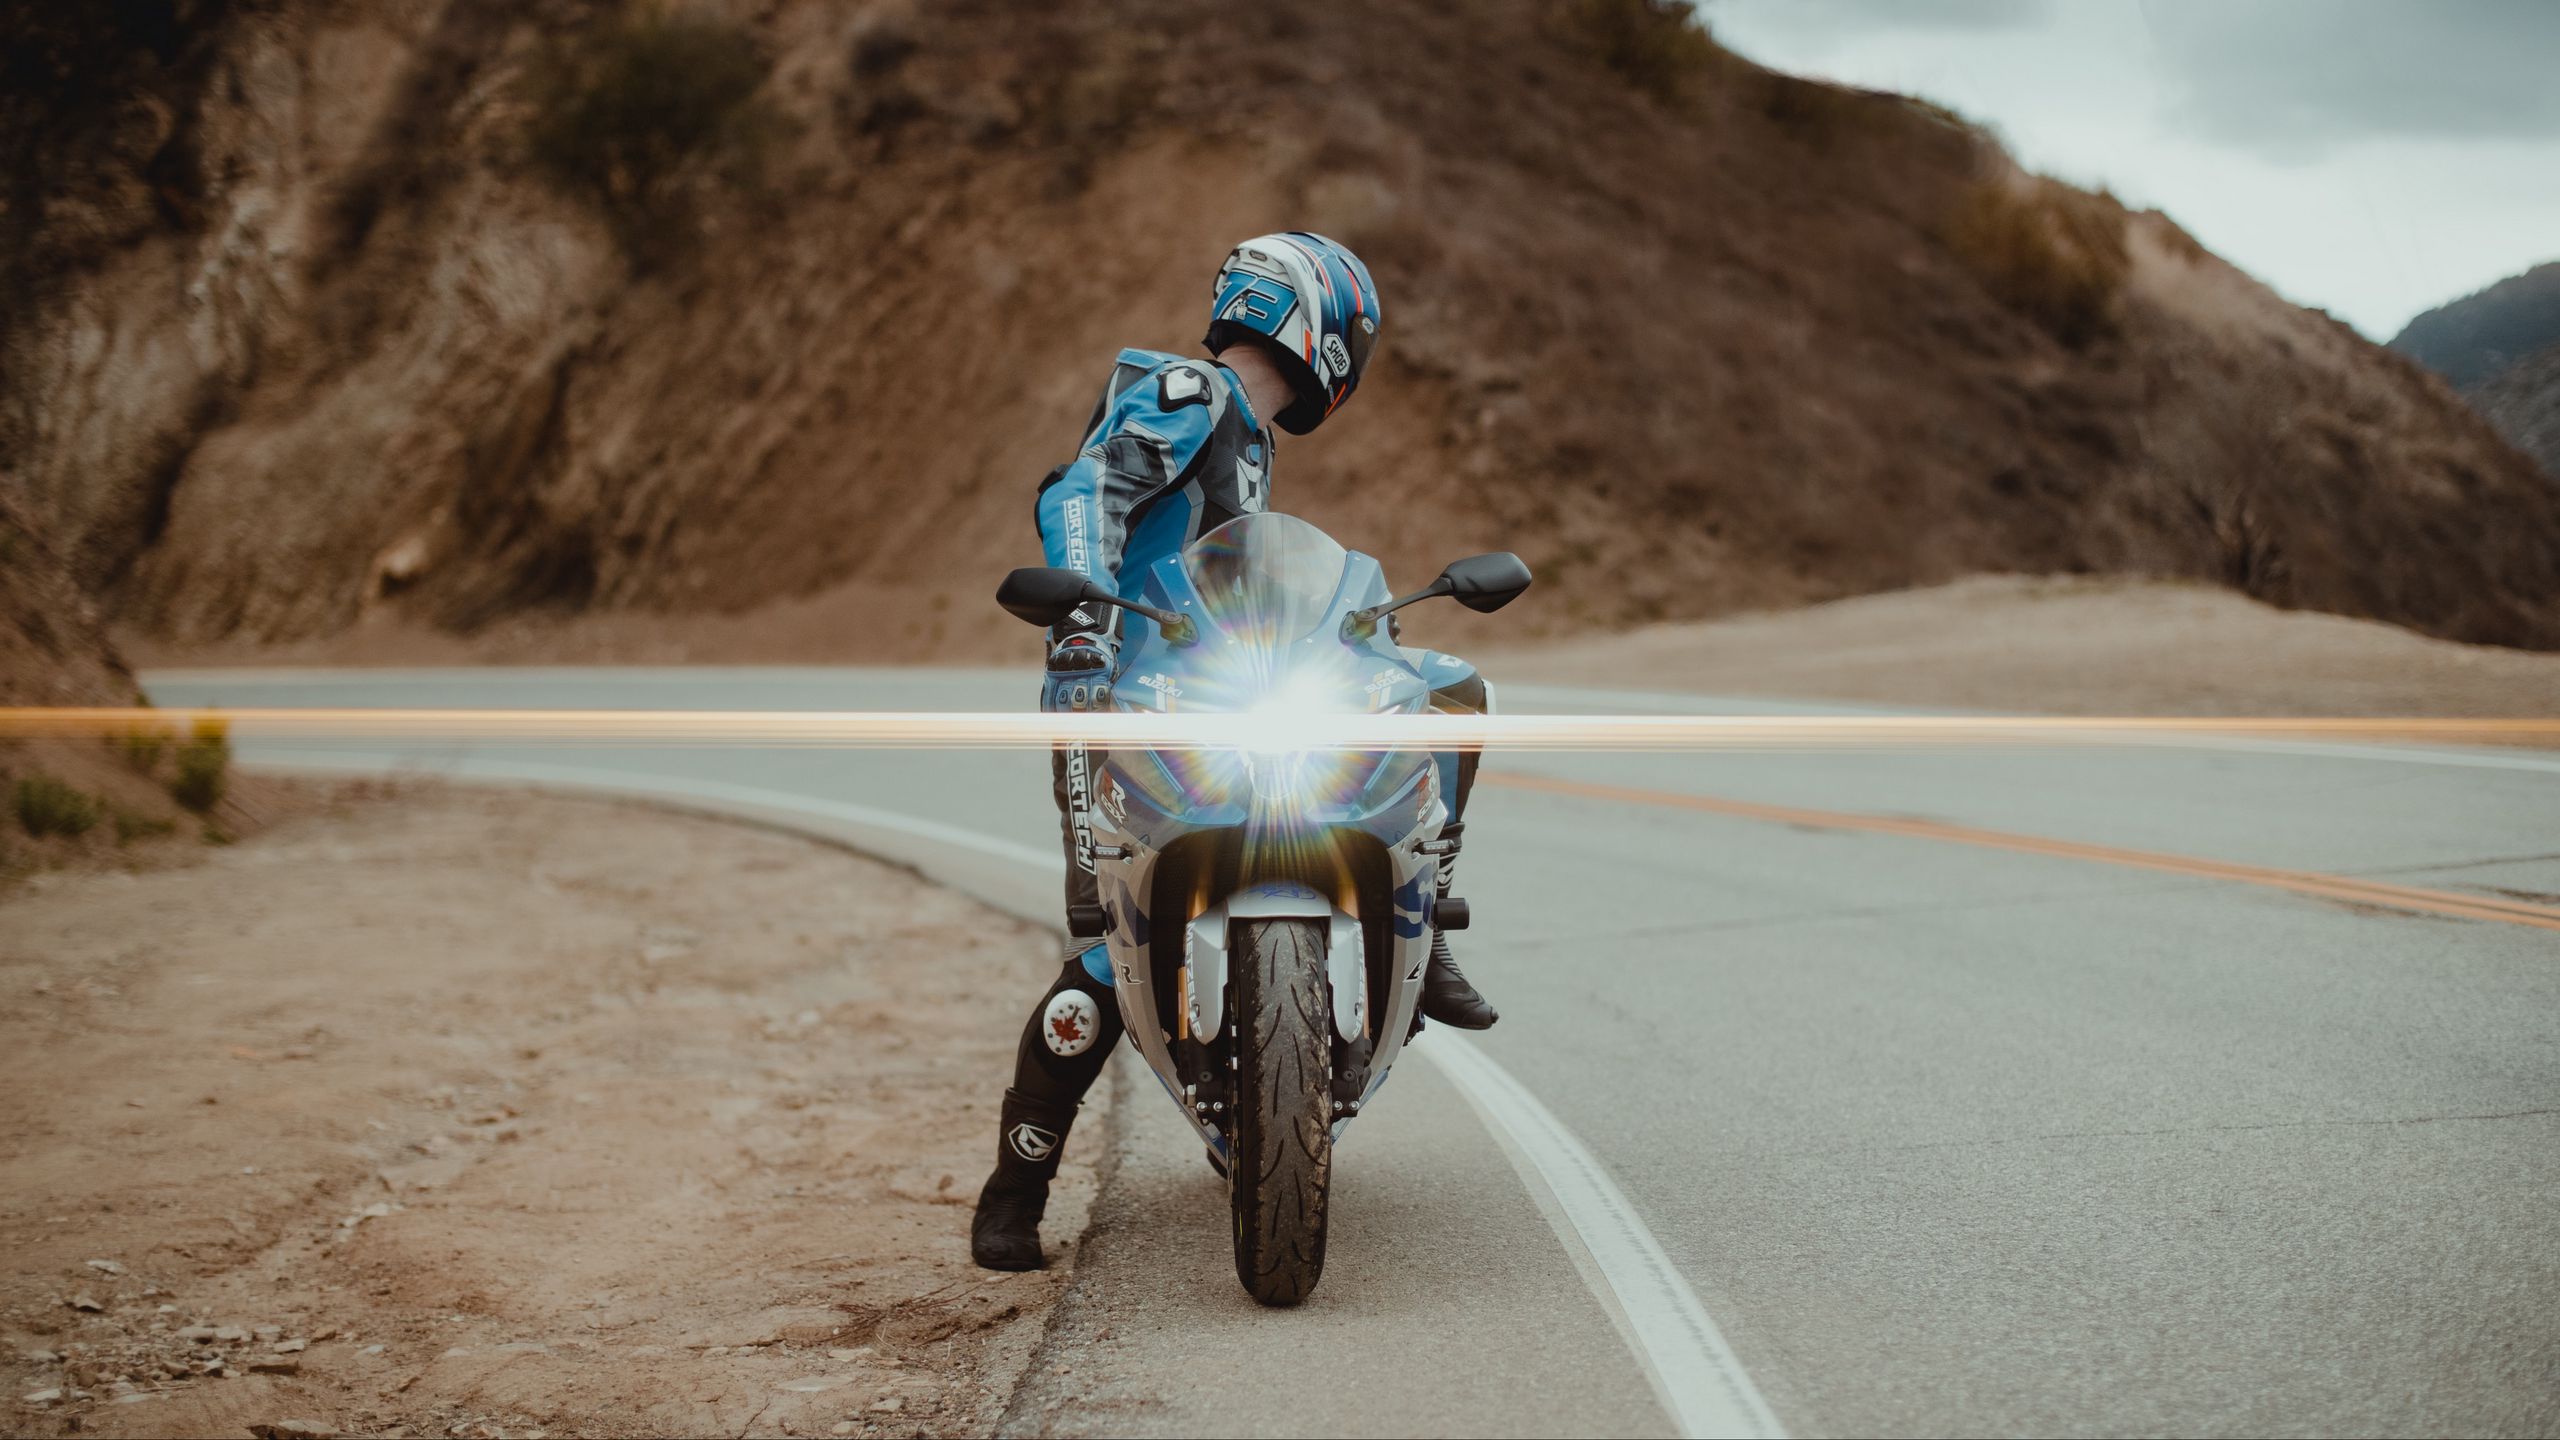 2560x1440 Wallpaper motorcycle, motorcyclist, bike, sport bike, light